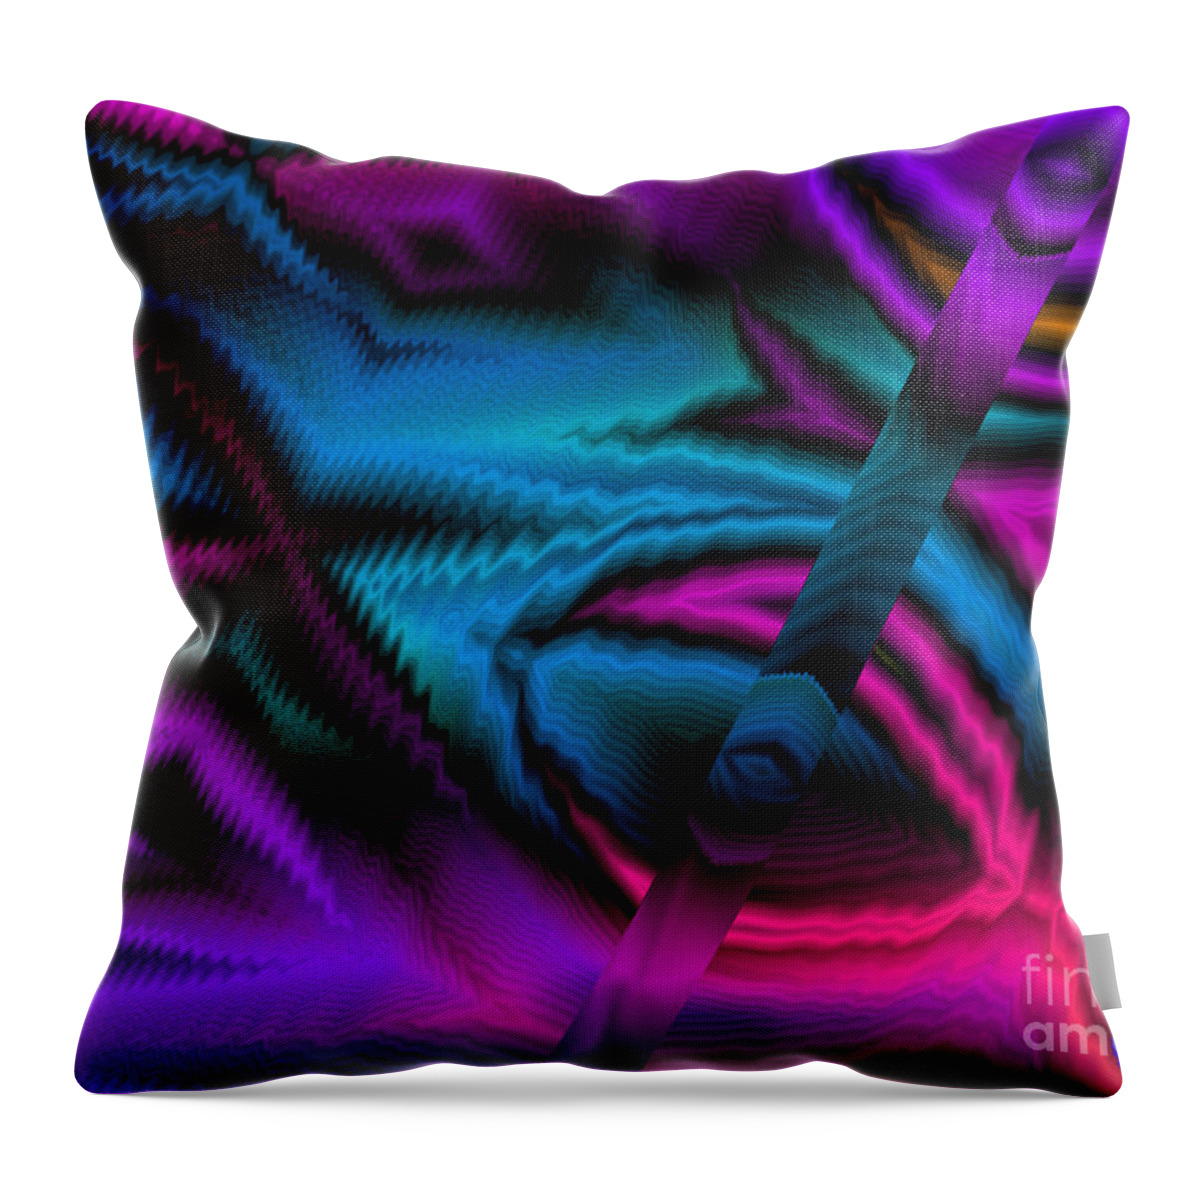 Math Throw Pillow featuring the digital art Ixoye by Stan Reckard